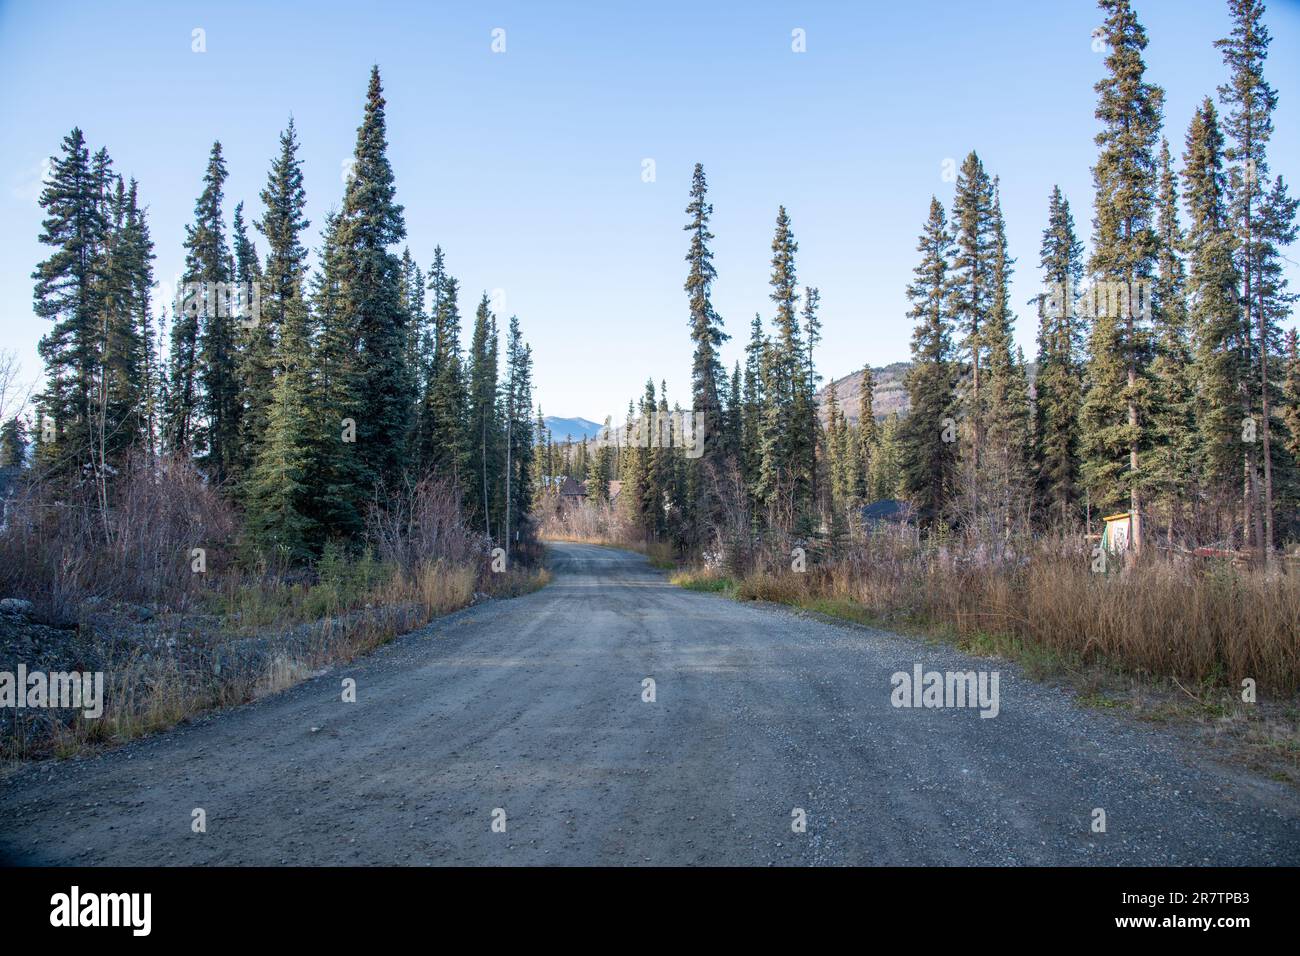 Einsame und wilde Straße im borealen Wald von Yukon Territory, Kanada im Herbst, mit Fichten und Kiefern in Wohngebieten. Stockfoto